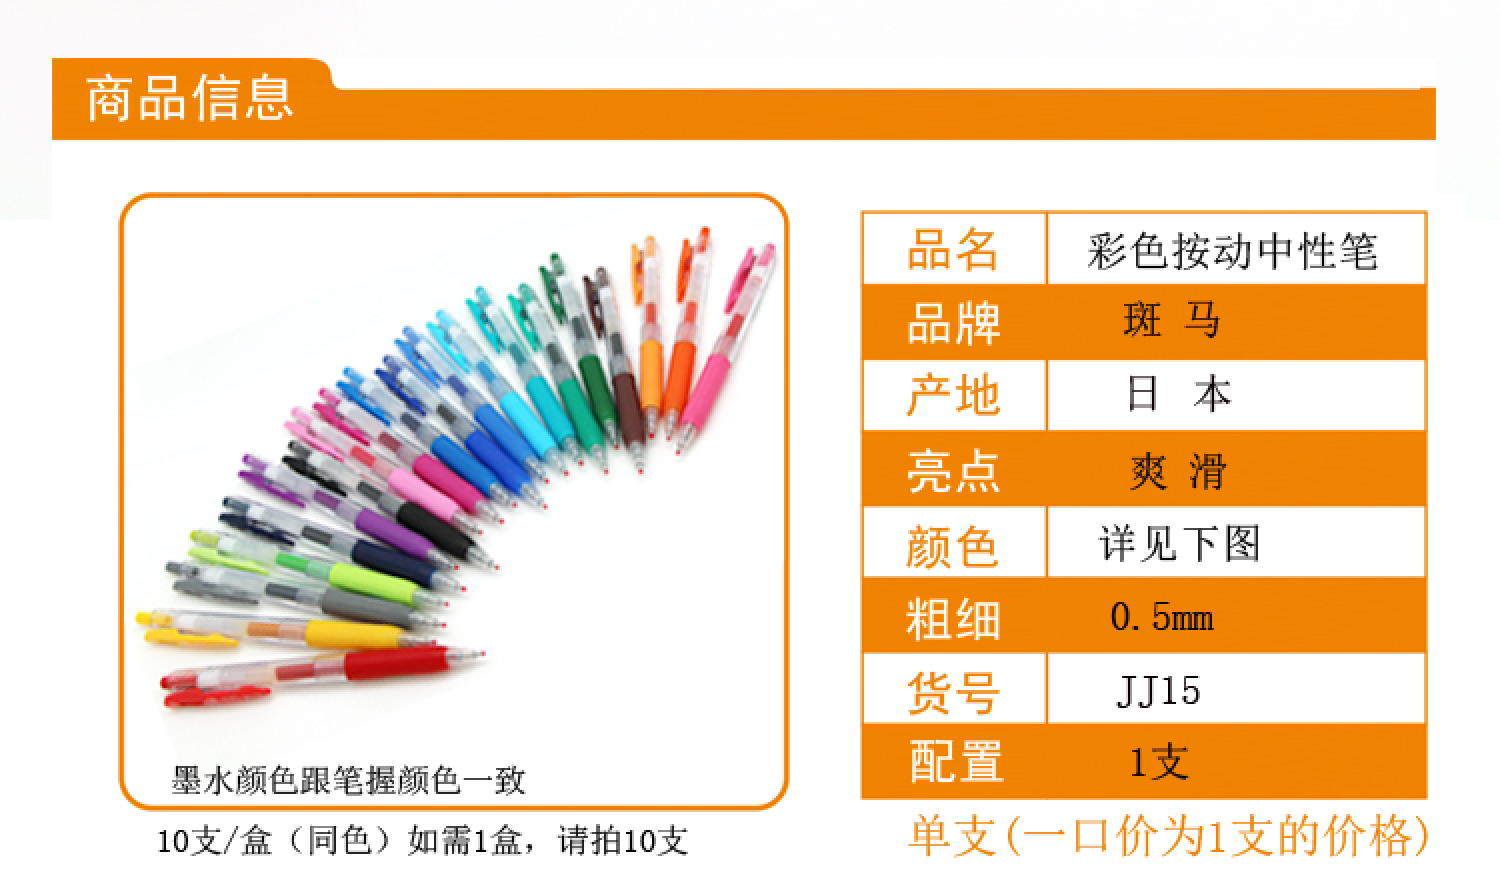 斑马 ZEBRA JJ15 中性笔/水笔 啫喱笔斑马0.5中性笔 20色详情2